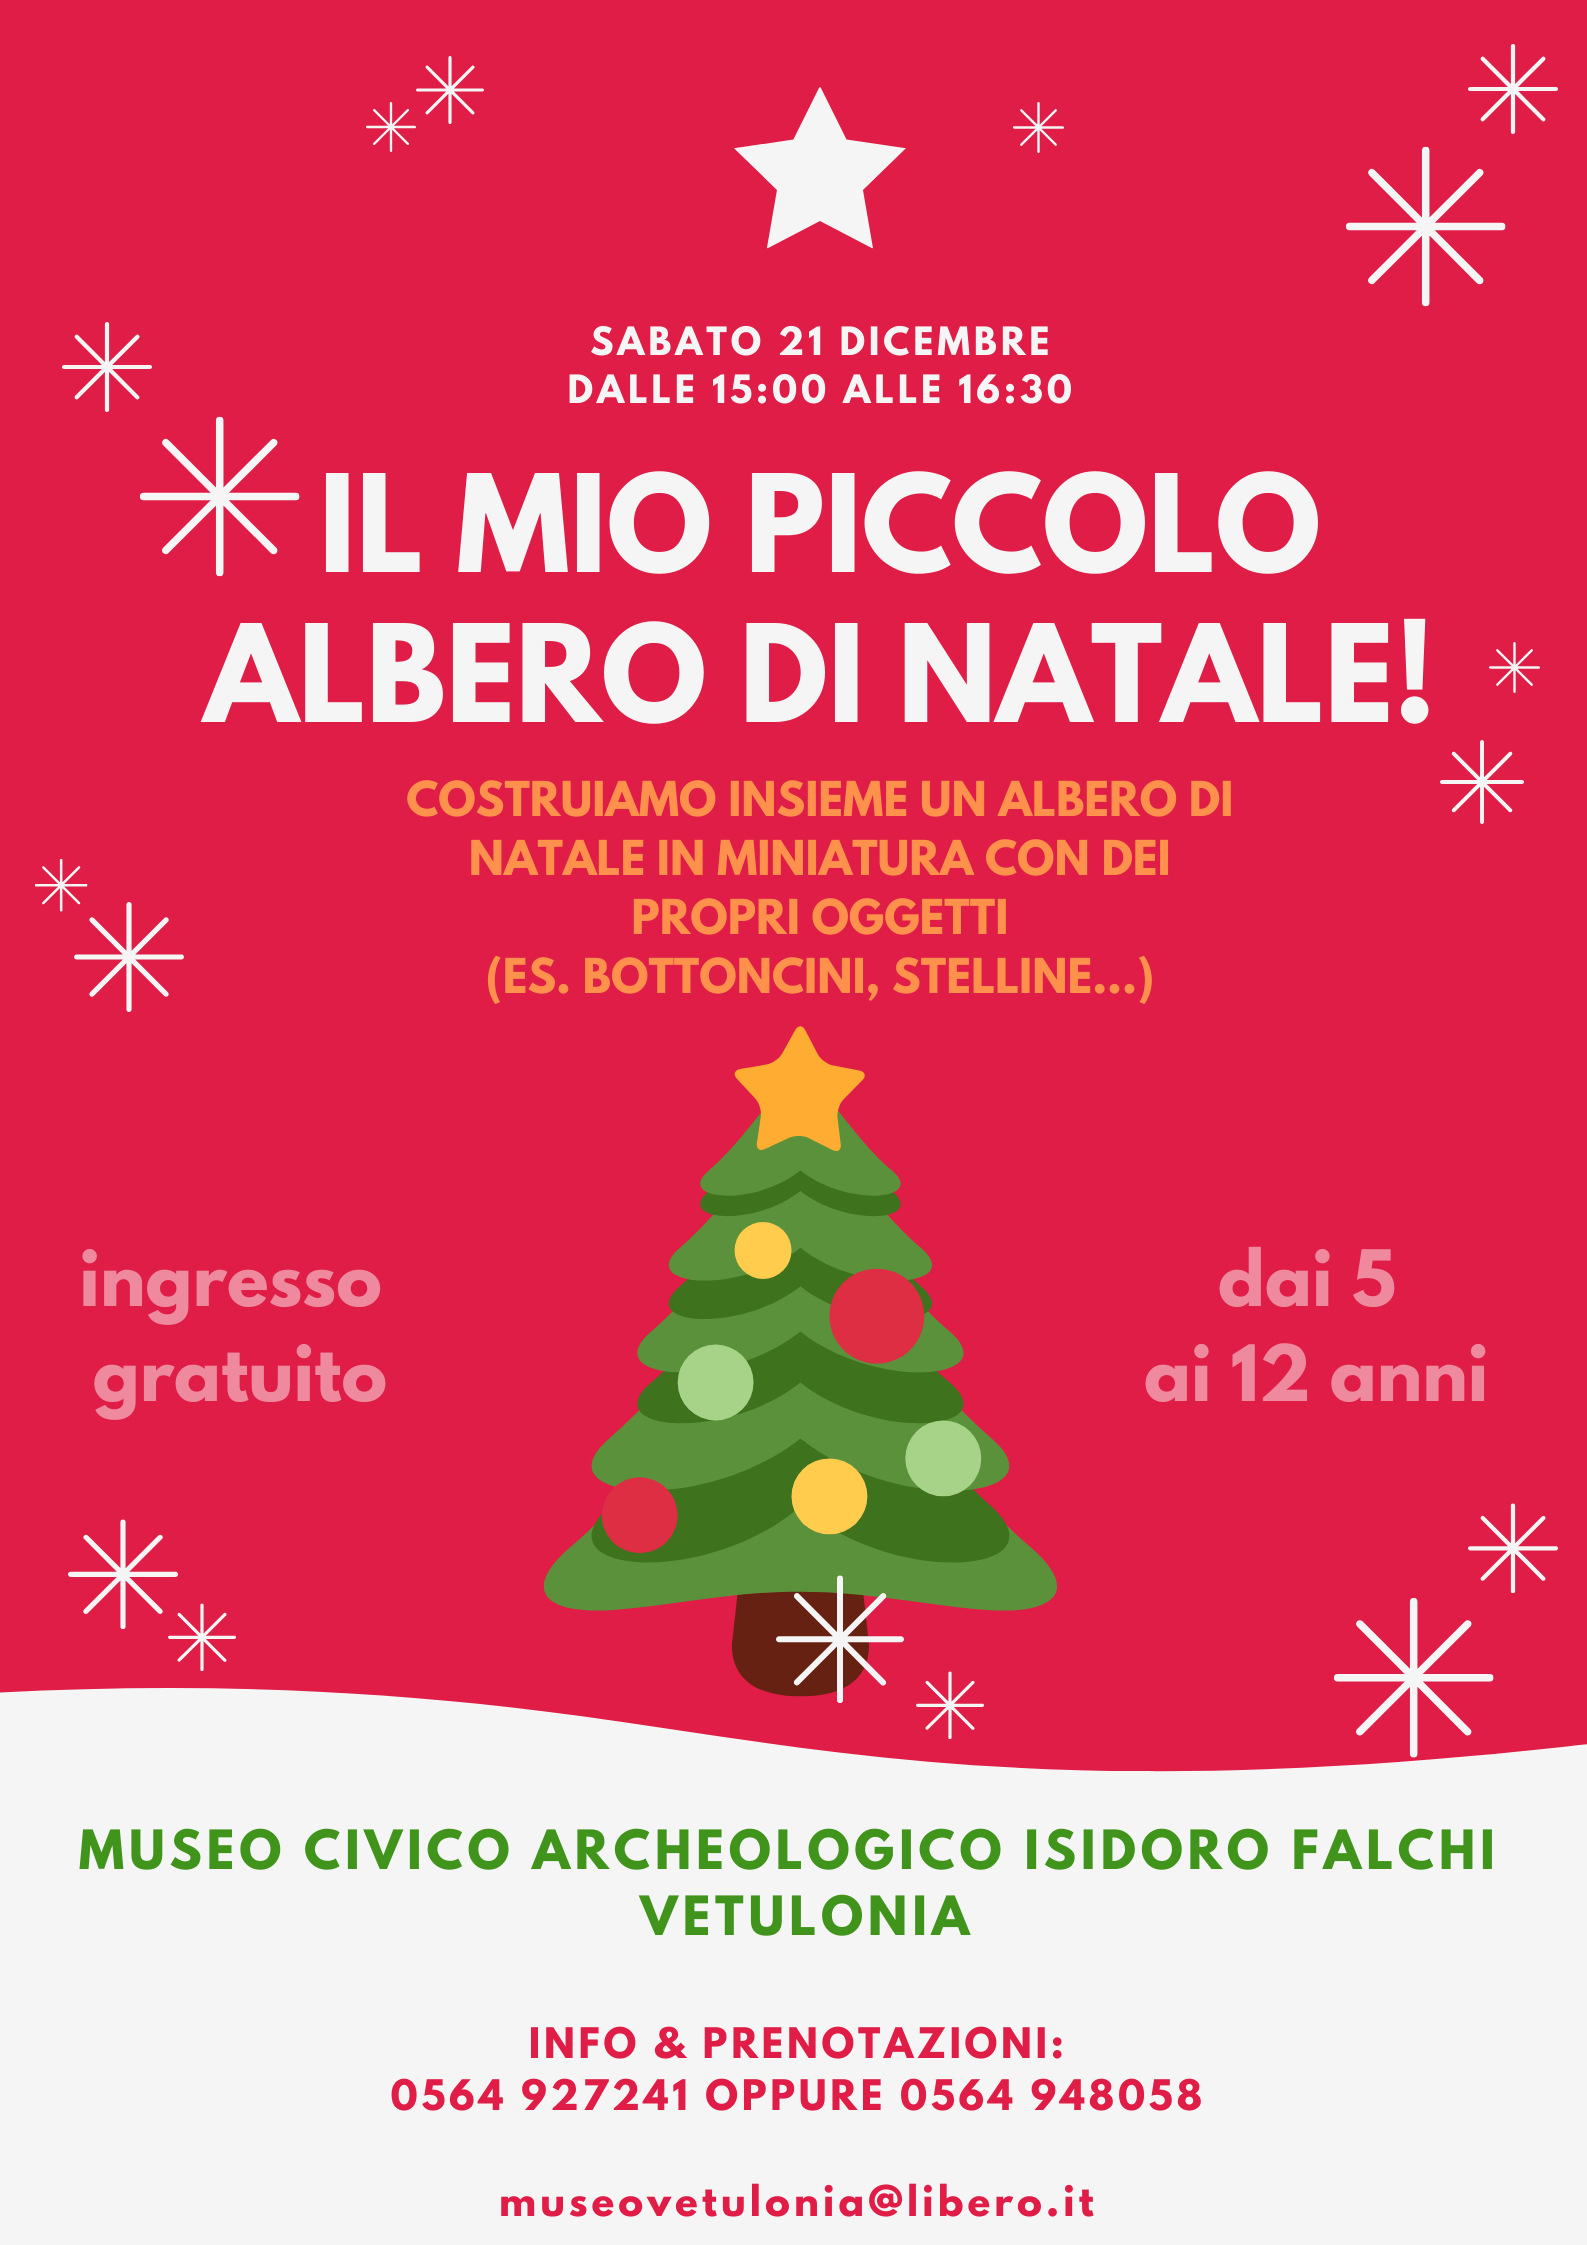 Immagini Di Natale Anni 30.Qui Maremma Toscana Il Mio Piccolo Albero Di Natale